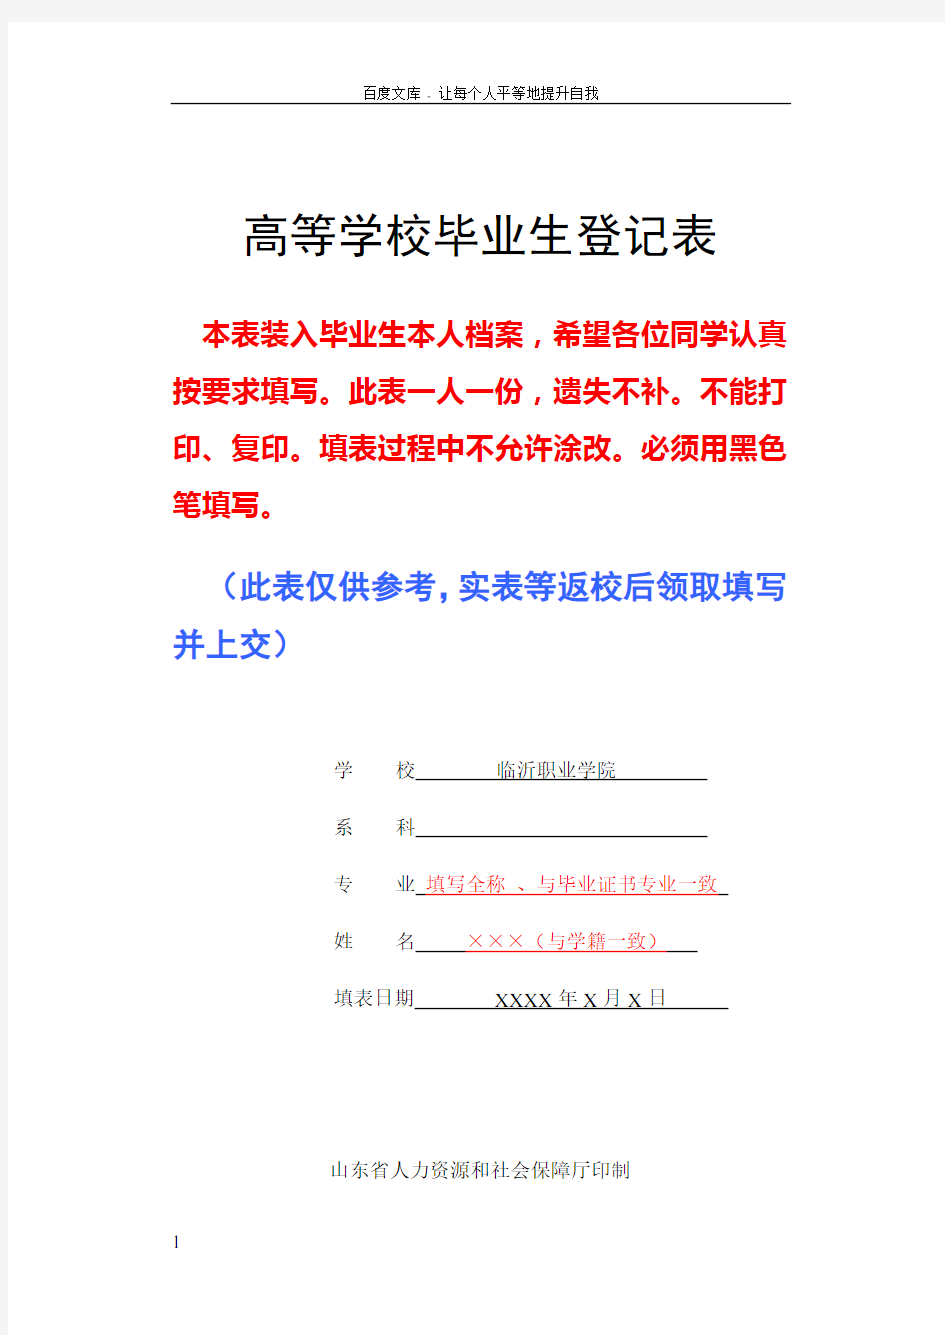 山东省高等学校毕业生登记表(填写参考模板)